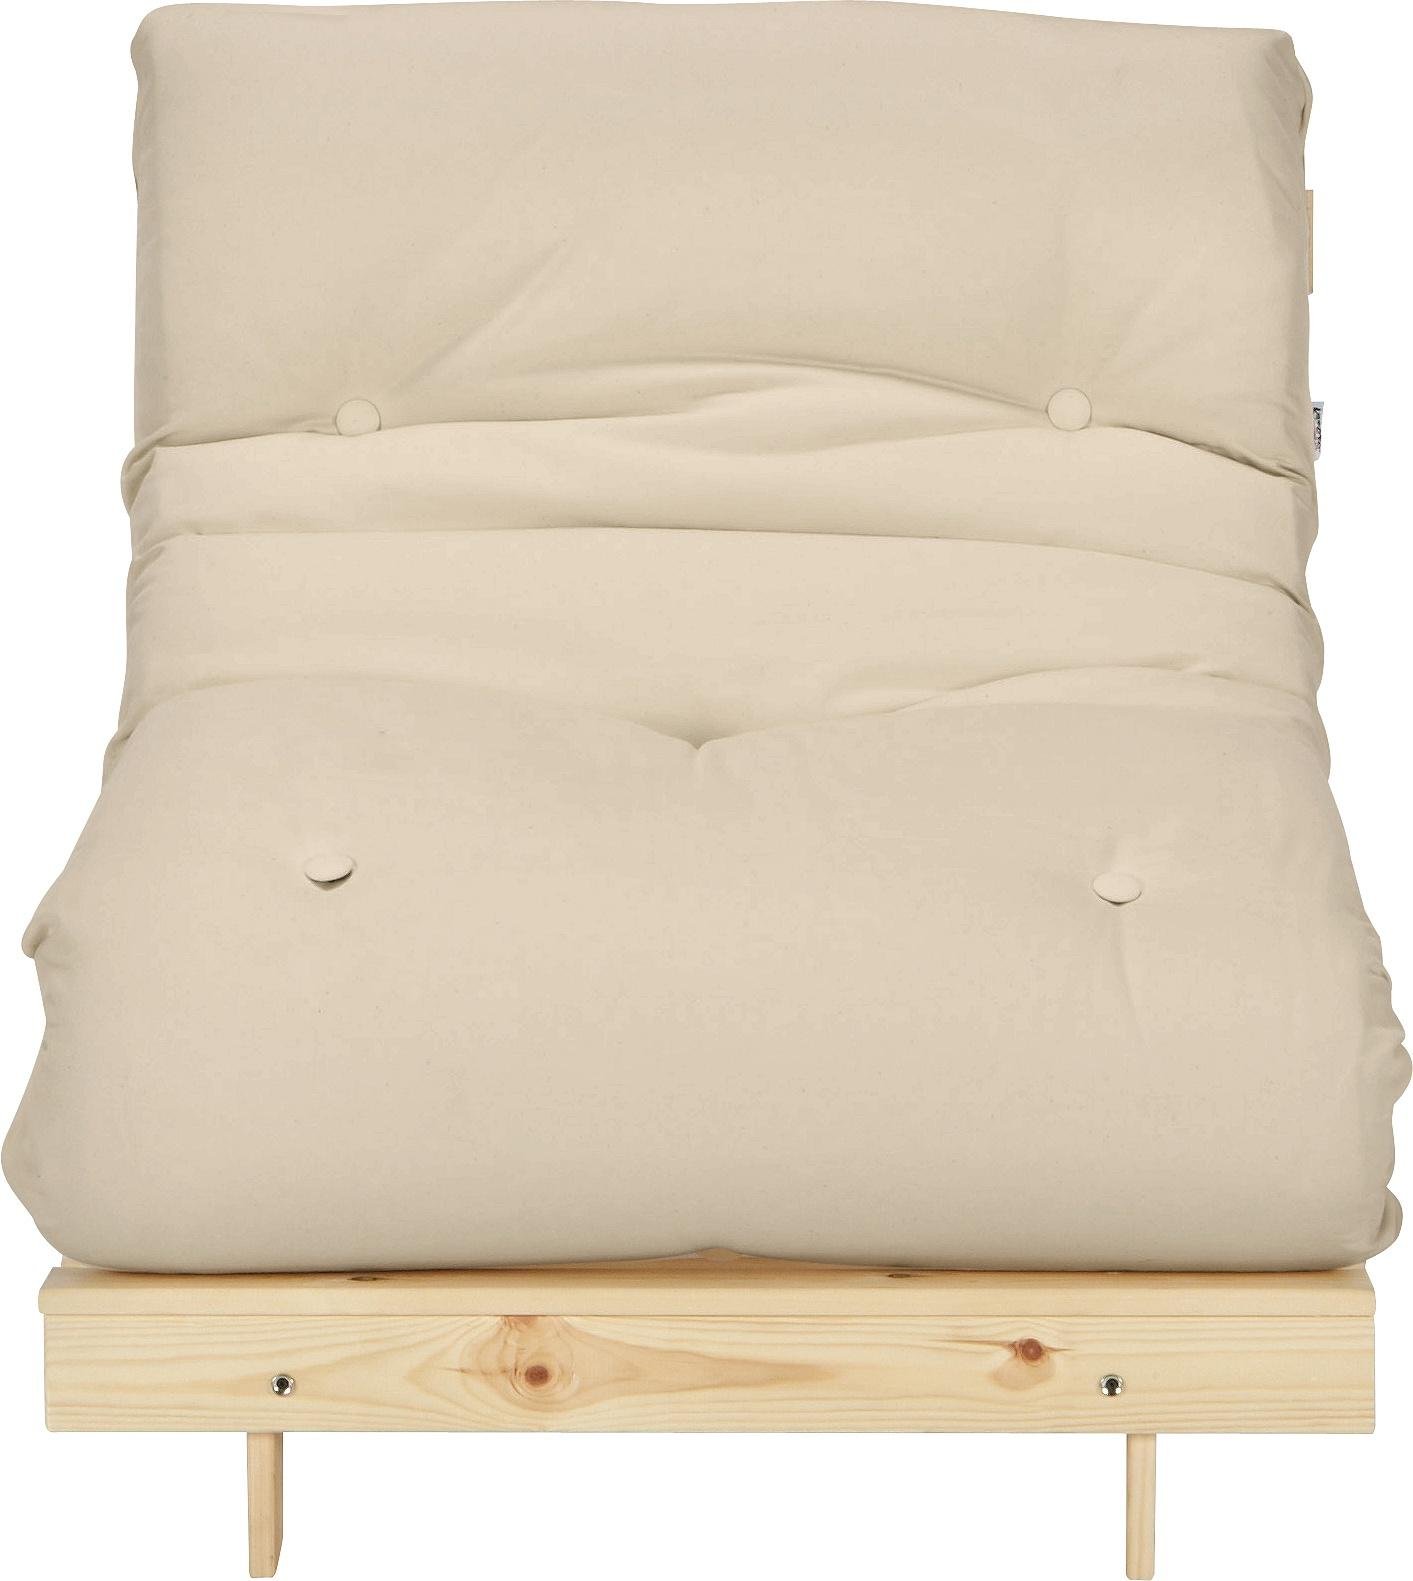 Argos Home Single Pine Futon Sofa Bed w/ Mattress review